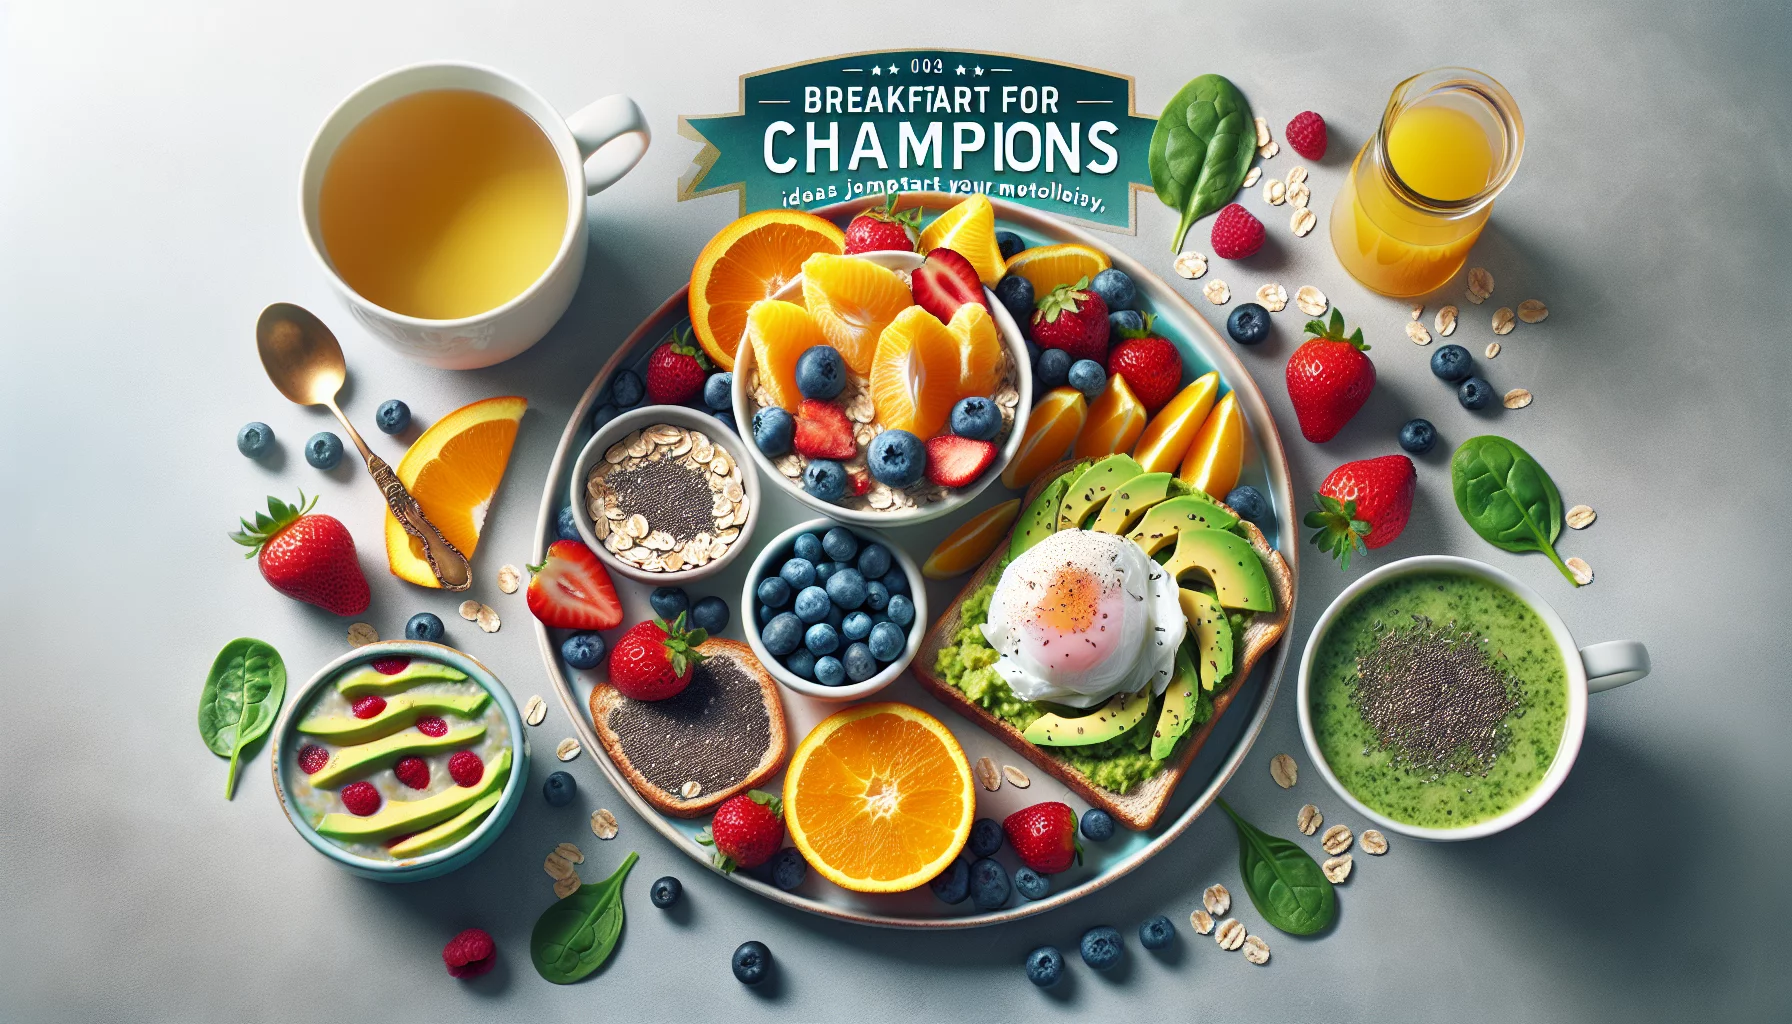 Petit-déjeuner pour champions : idées pour booster votre métabolisme dès le matin
